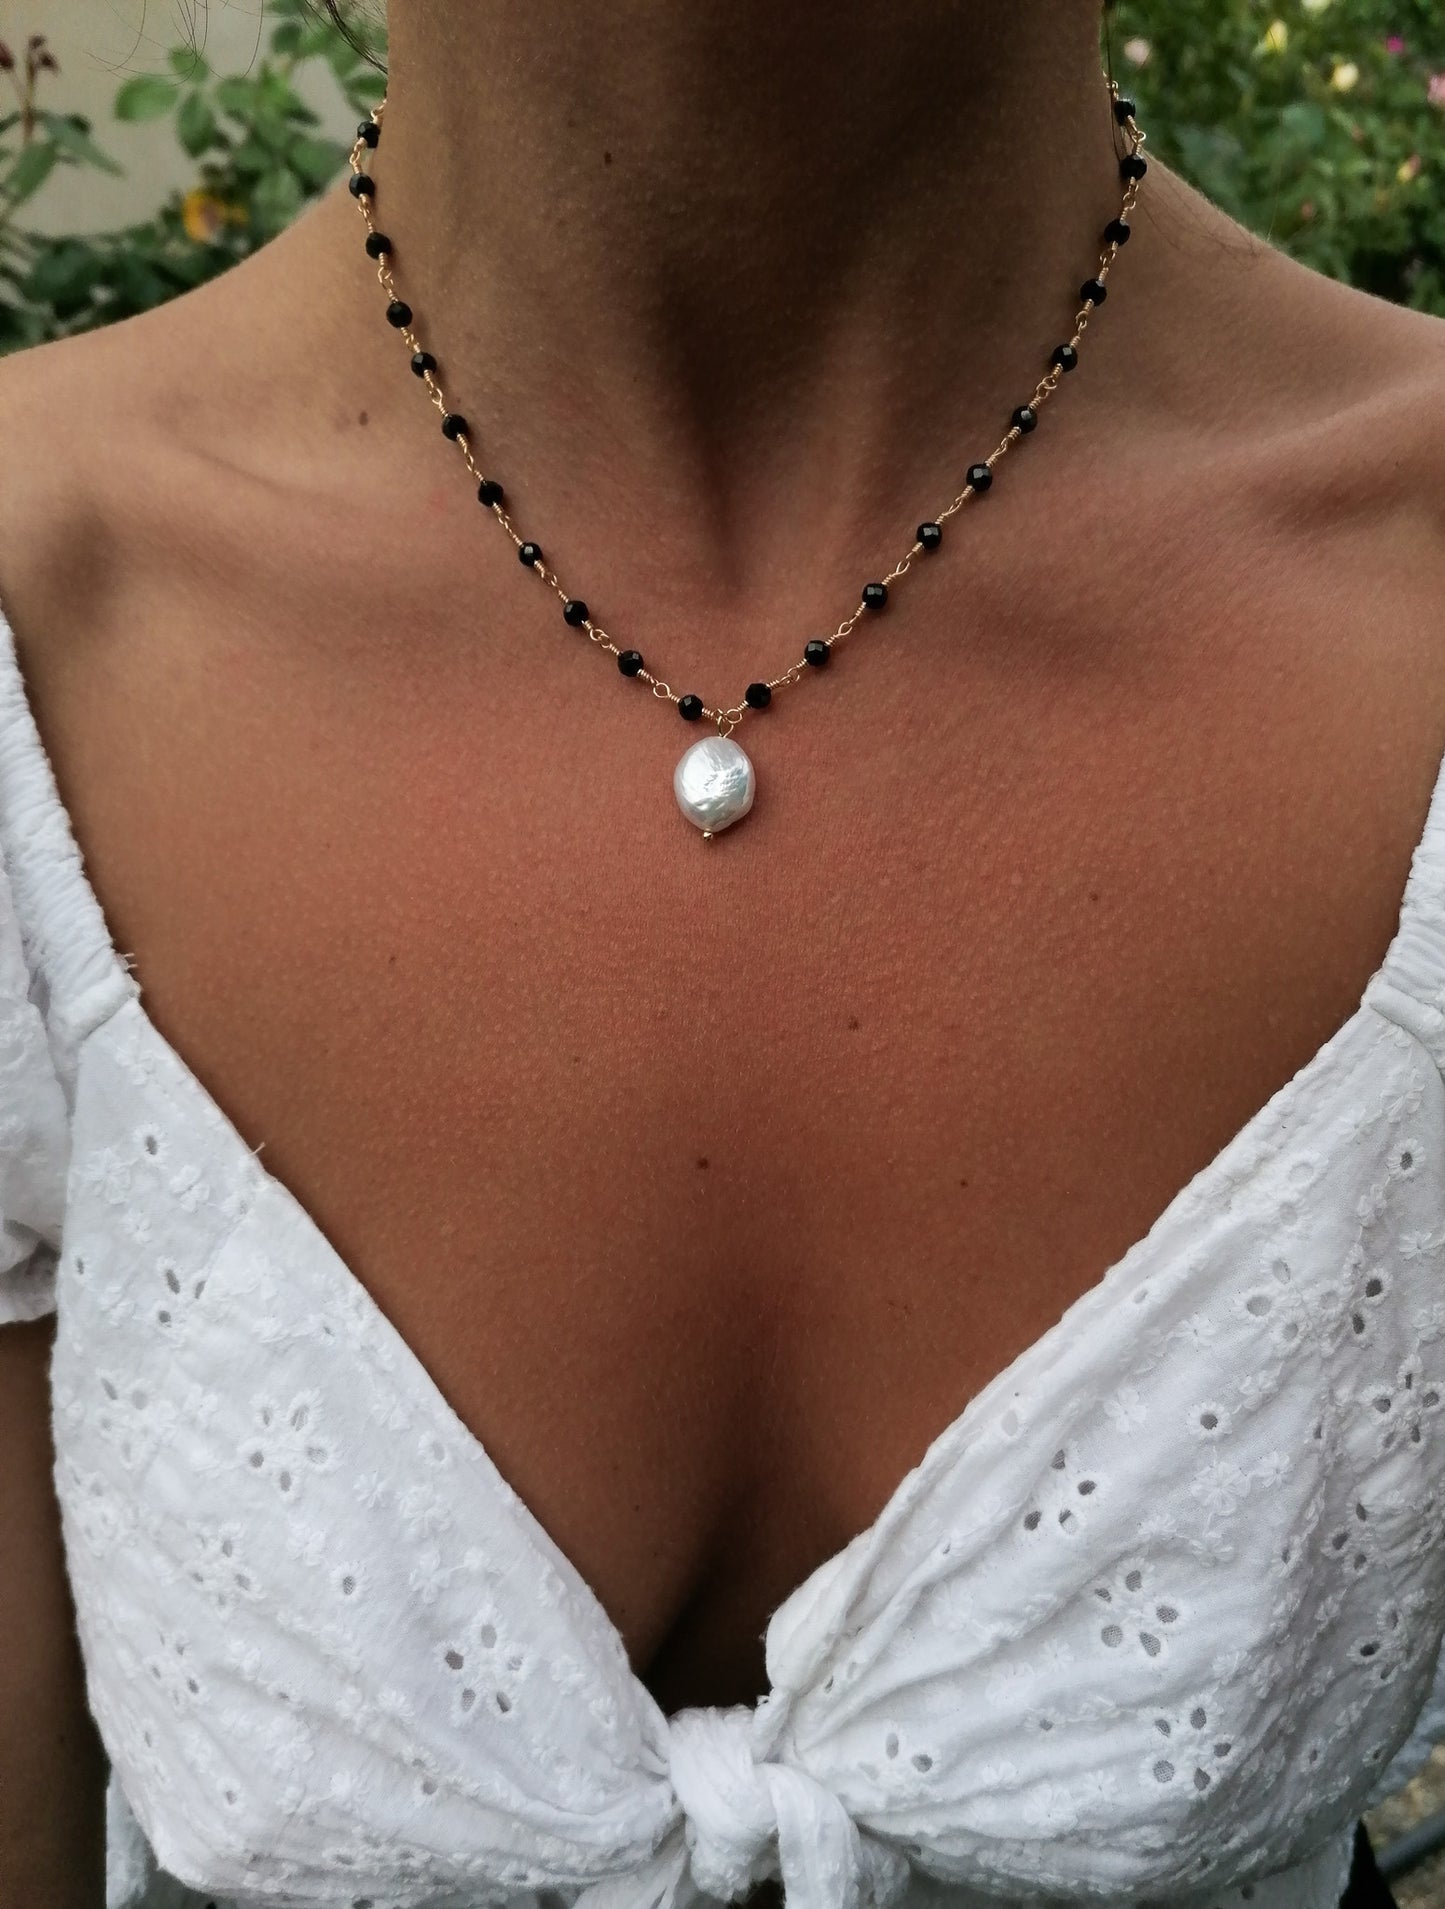 Penelope necklace - black spinel